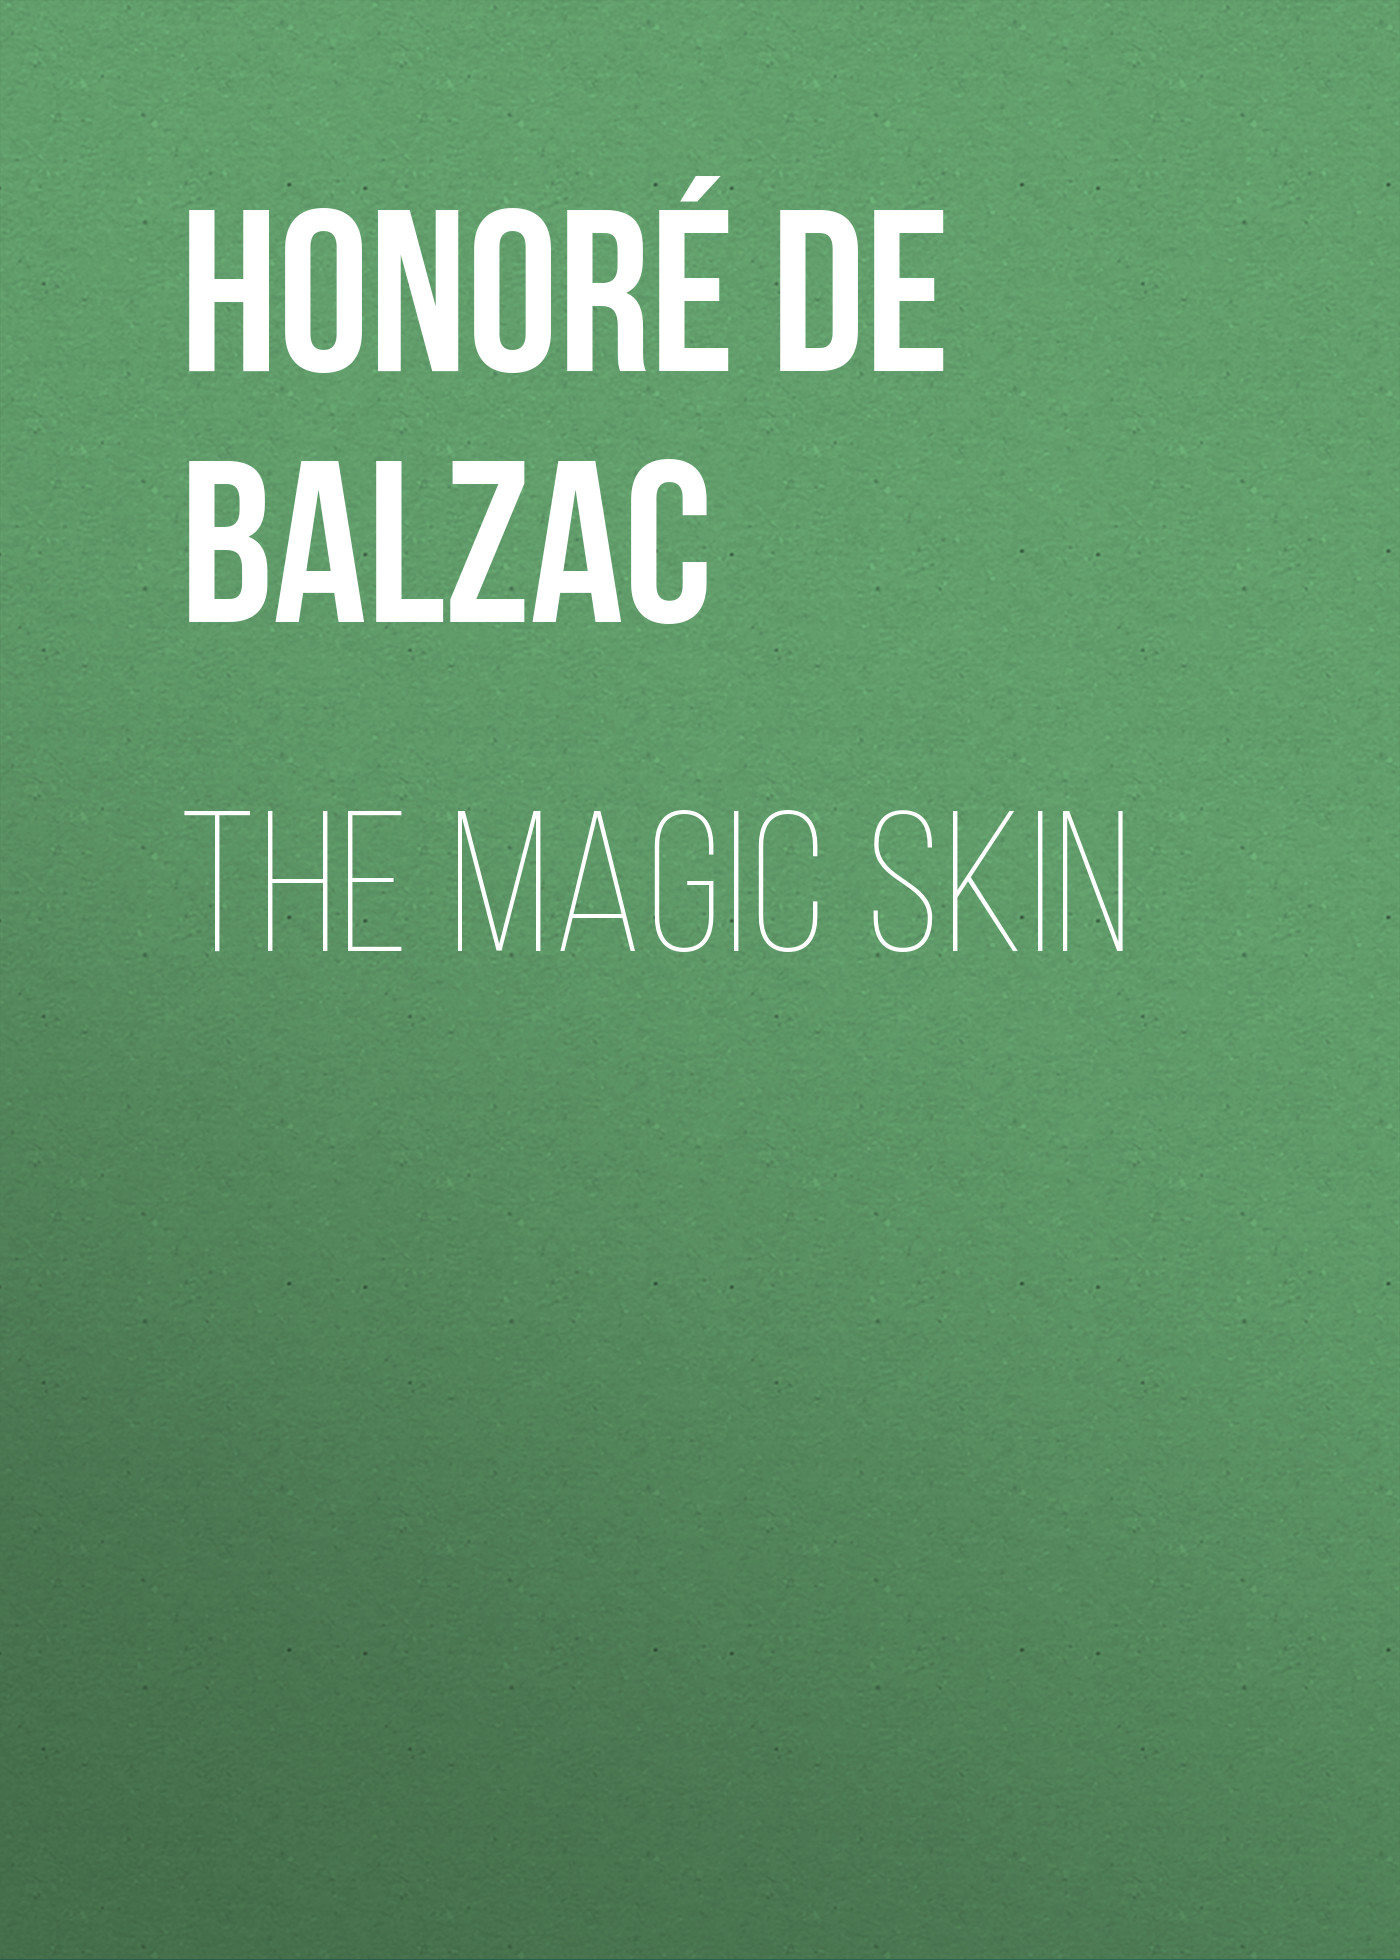 Книга The Magic Skin из серии , созданная Honoré Balzac, может относится к жанру Литература 19 века, Зарубежная старинная литература, Зарубежная классика. Стоимость электронной книги The Magic Skin с идентификатором 25020323 составляет 0 руб.